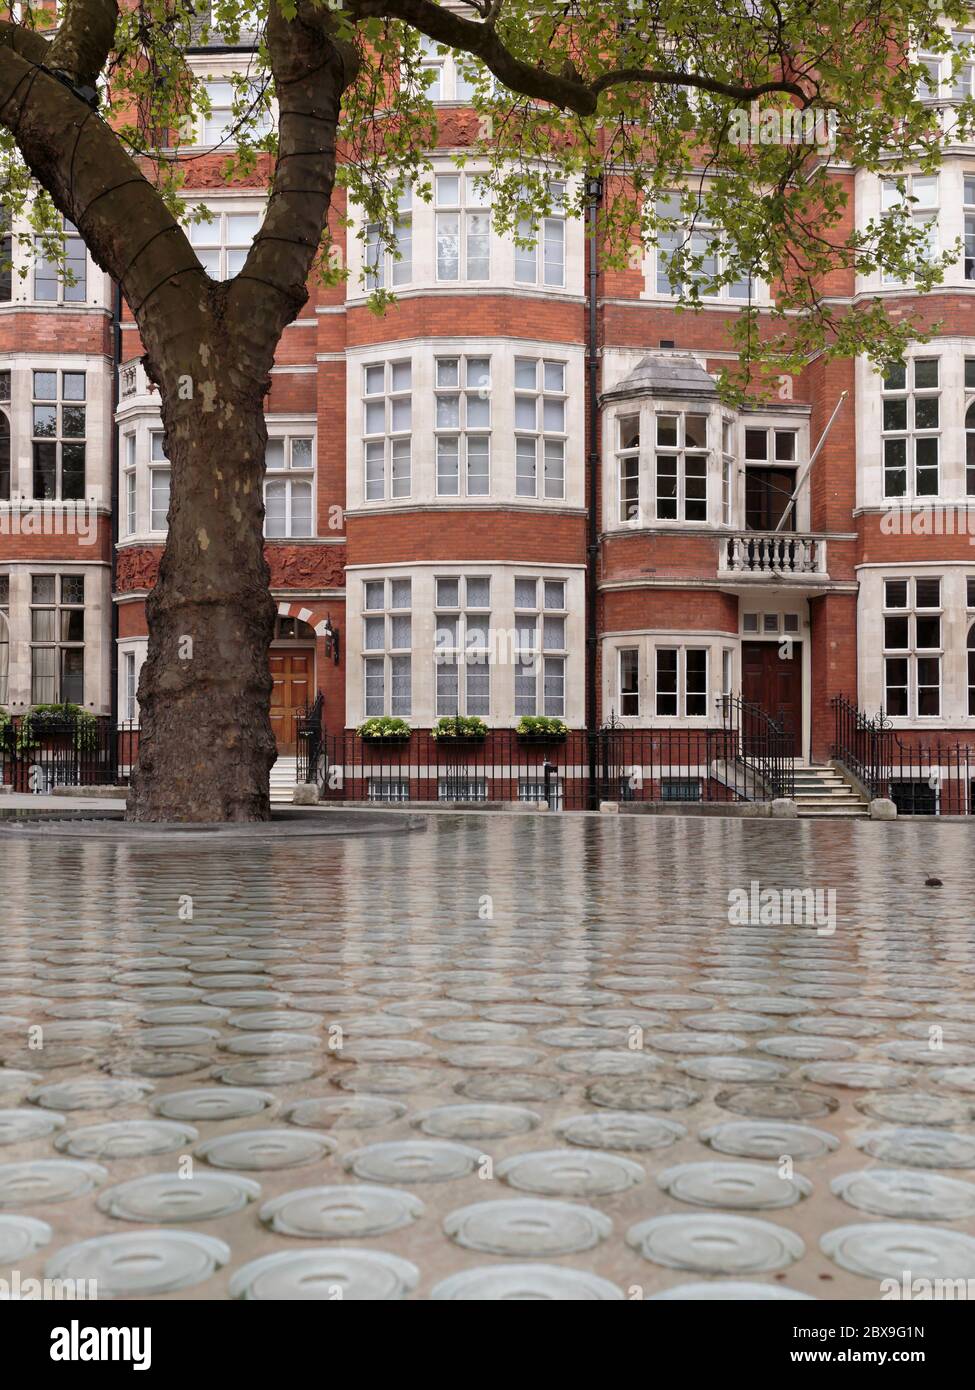 Fassade der Gebäude entlang Carlos Place mit dem öffentlichen Wasser Feature Silence von Tado Ando im Vordergrund, London, England Stockfoto